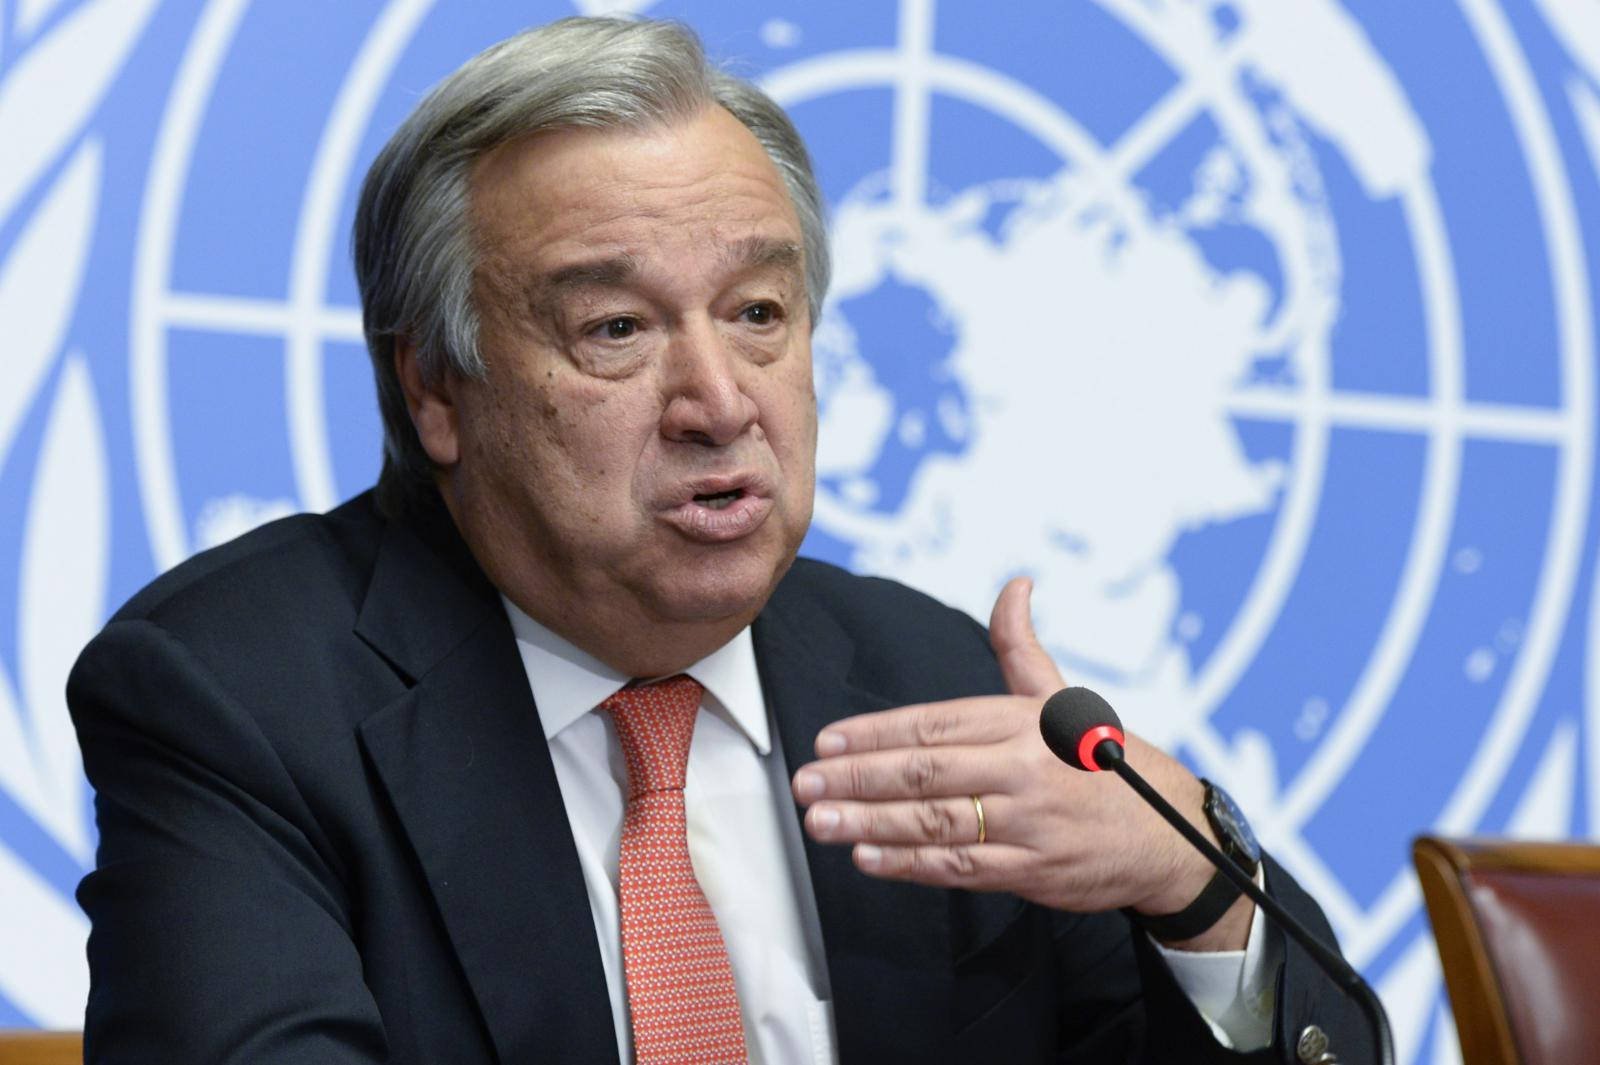 Antonio Guterres, United Nations. UN Photo / Jean-Marc Ferré